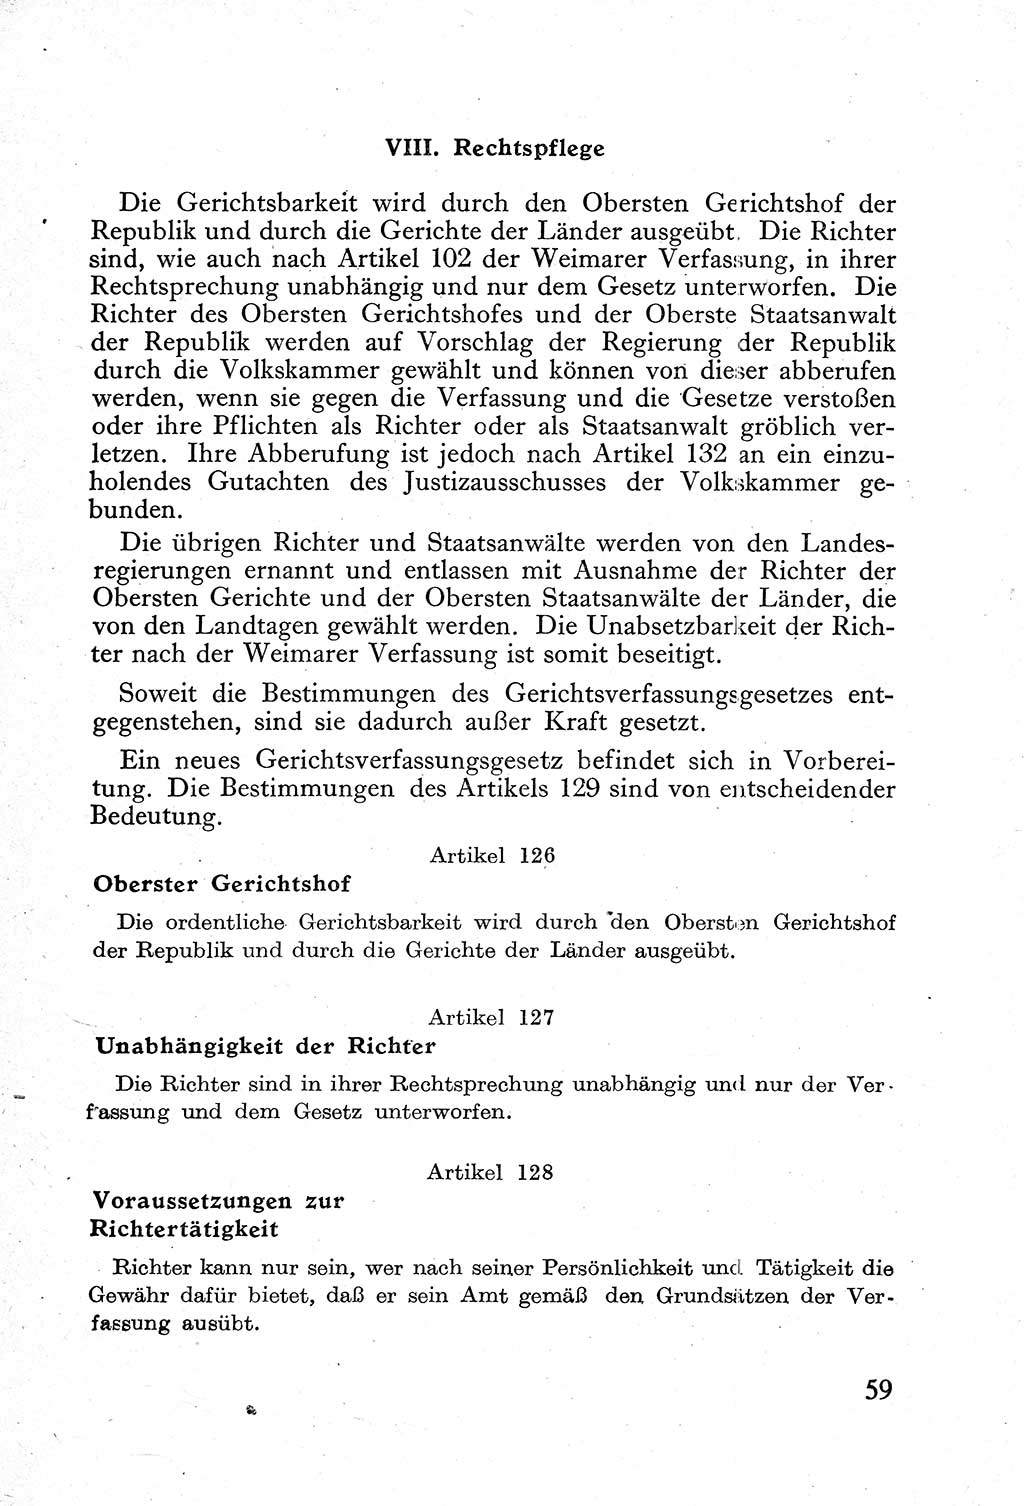 Verfassung der Deutschen Demokratischen Republik (DDR) mit einer Einleitung von Karl Steinhoff 1949, Seite 59 (Verf. DDR Einl. K. S. 1949, S. 59)